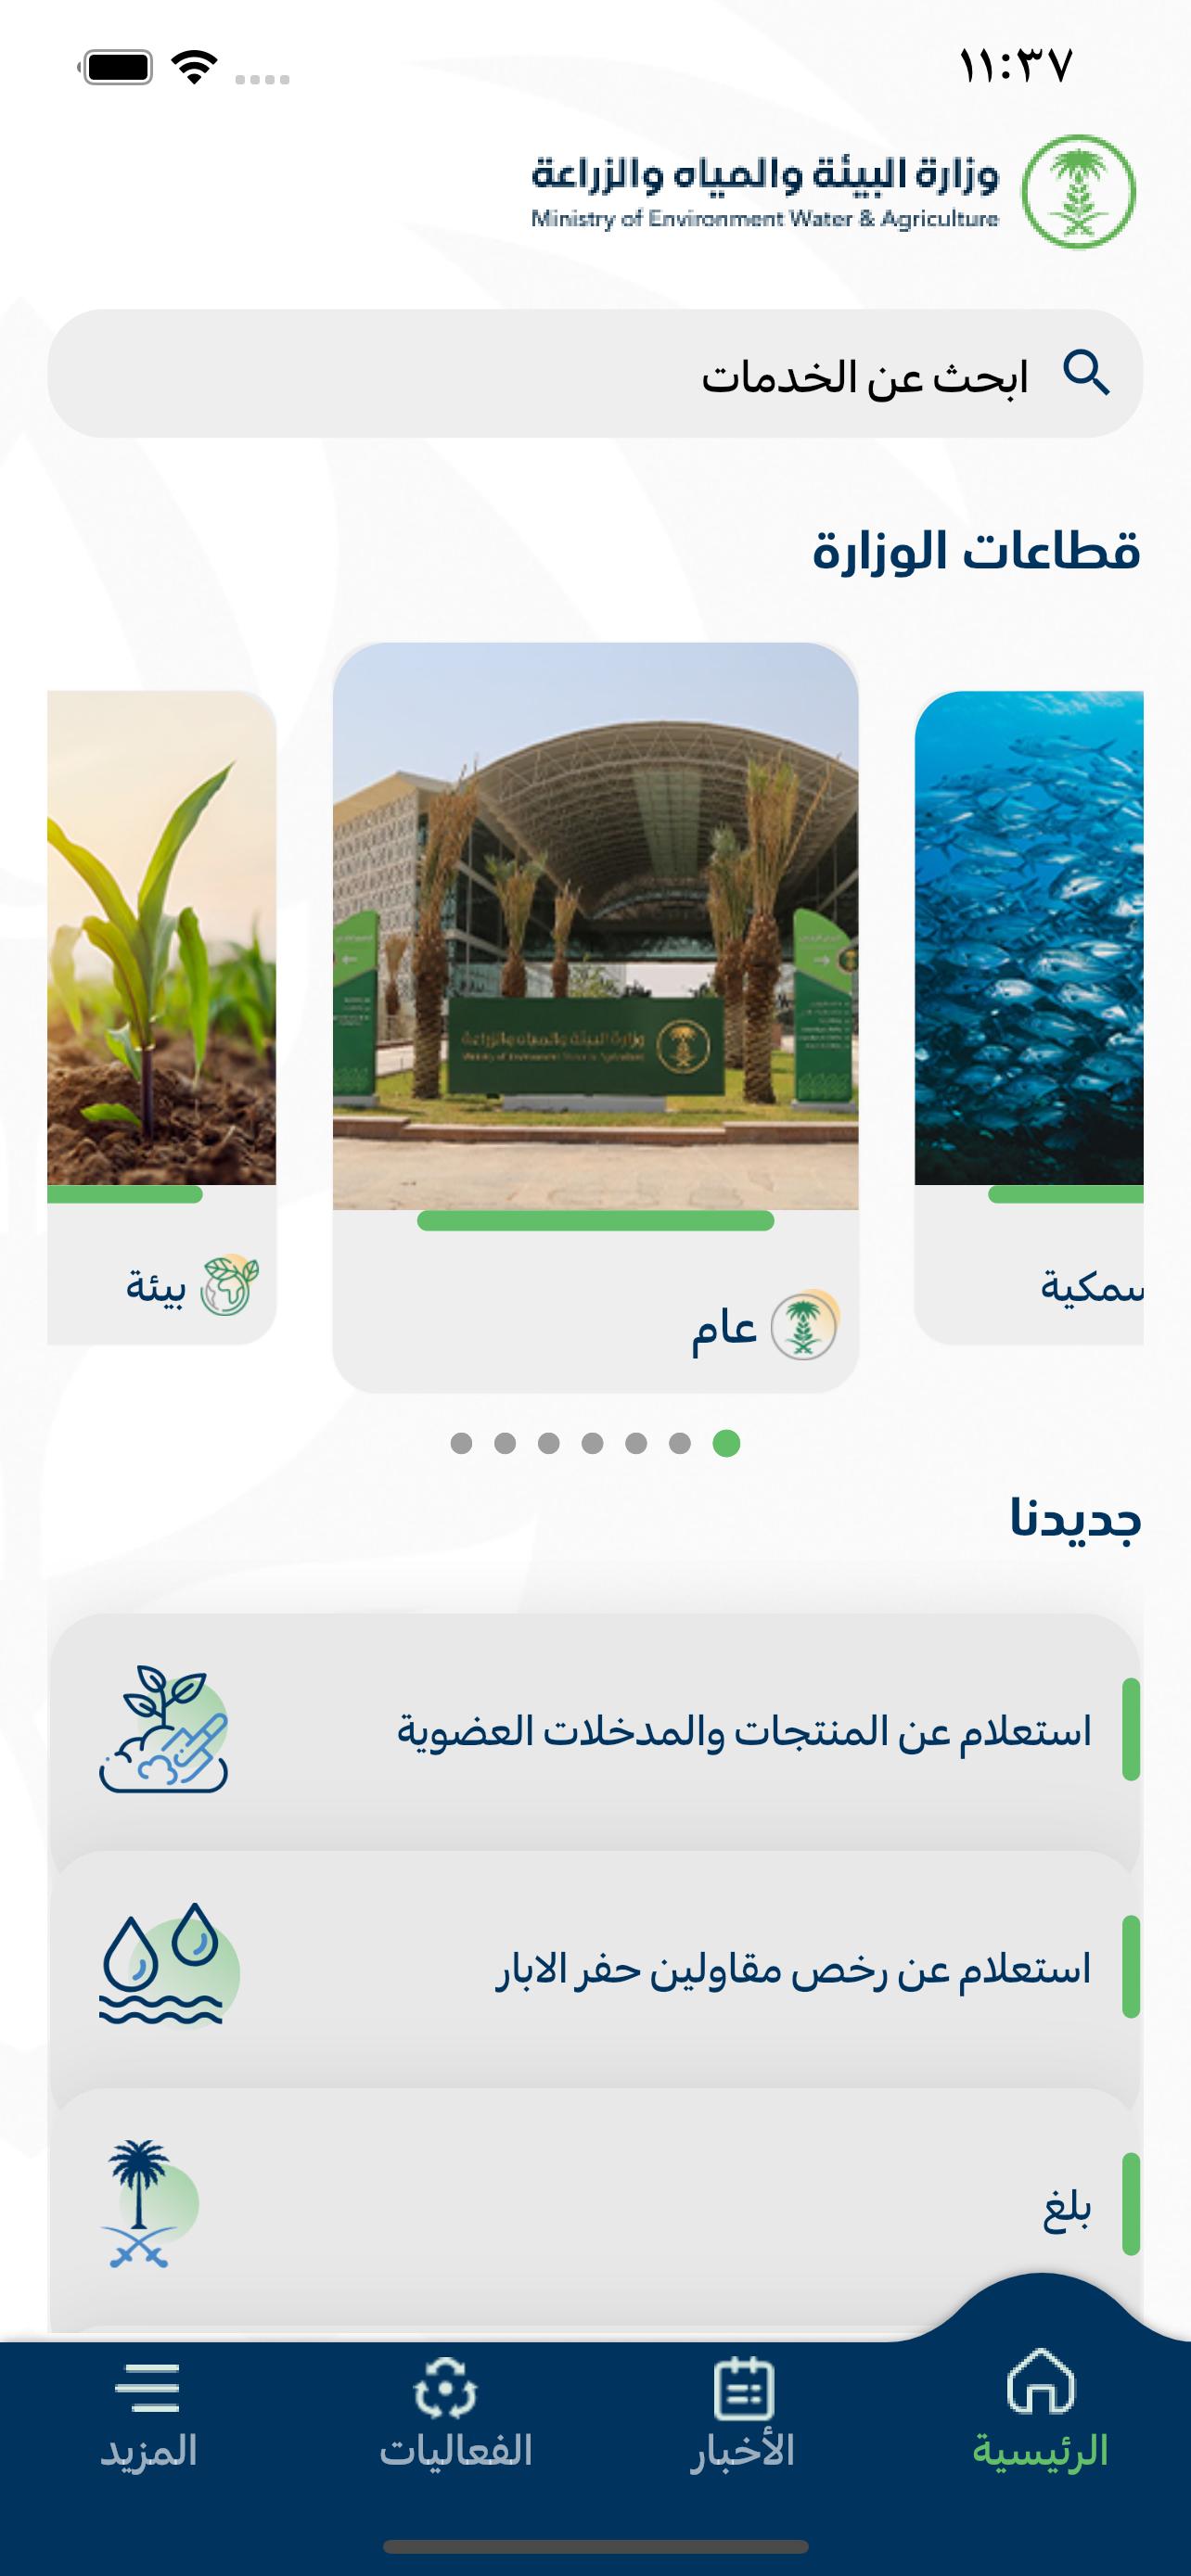 وزارة البيئة والمياه والزراعة . for Android - APK Download